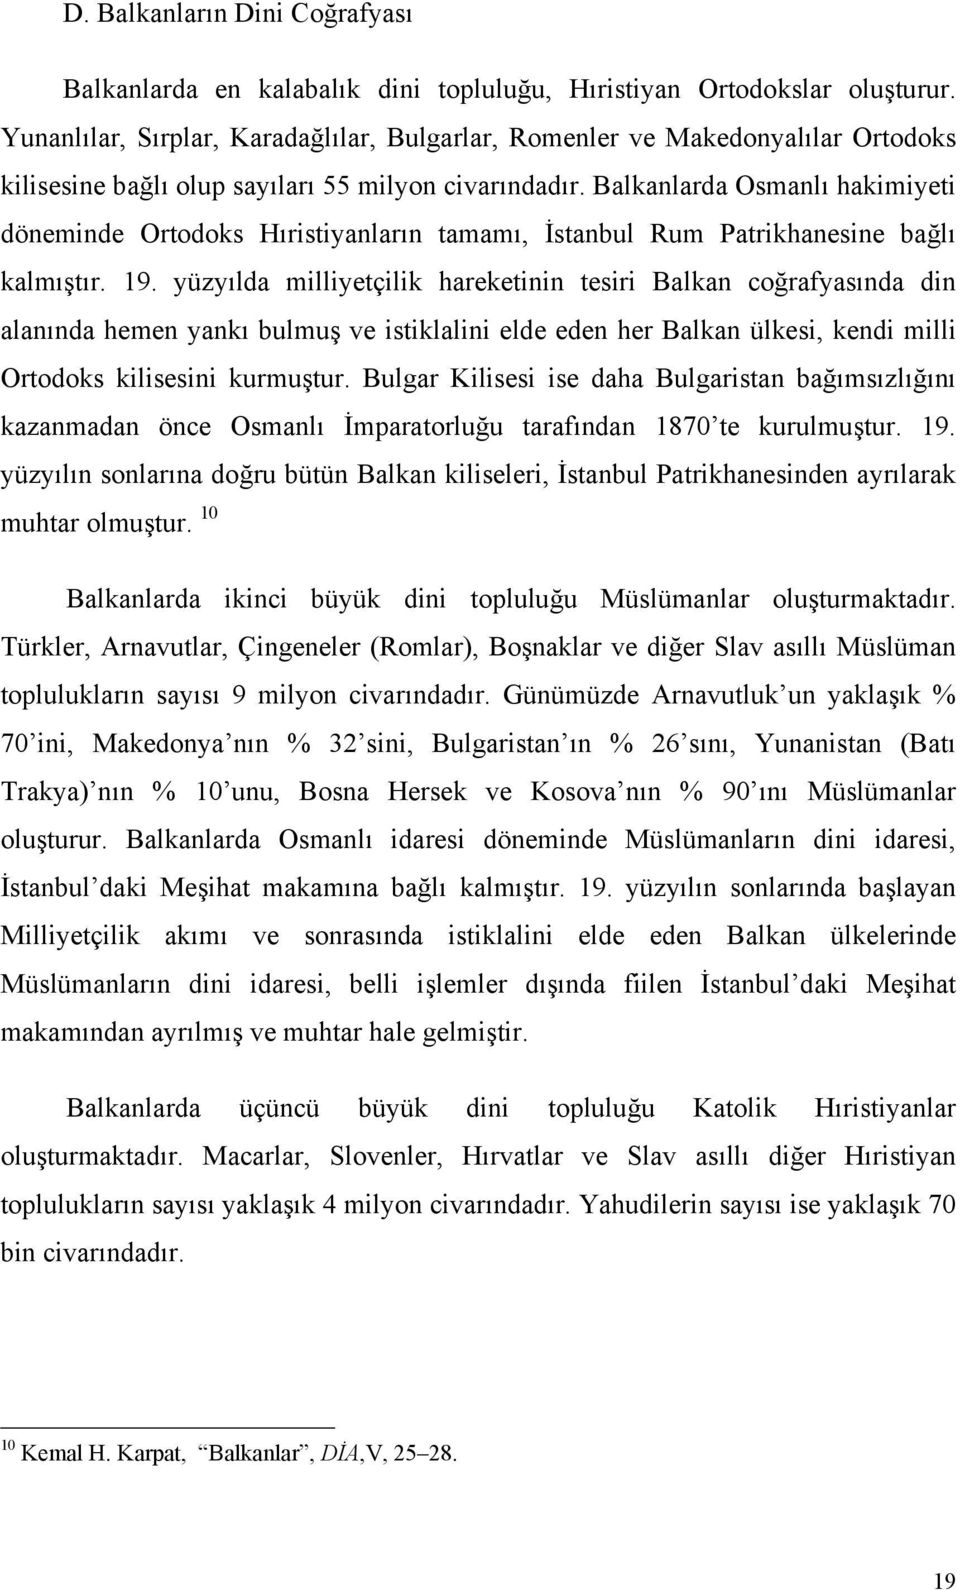 Balkanlarda Osmanlı hakimiyeti döneminde Ortodoks Hıristiyanların tamamı, İstanbul Rum Patrikhanesine bağlı kalmıştır. 19.